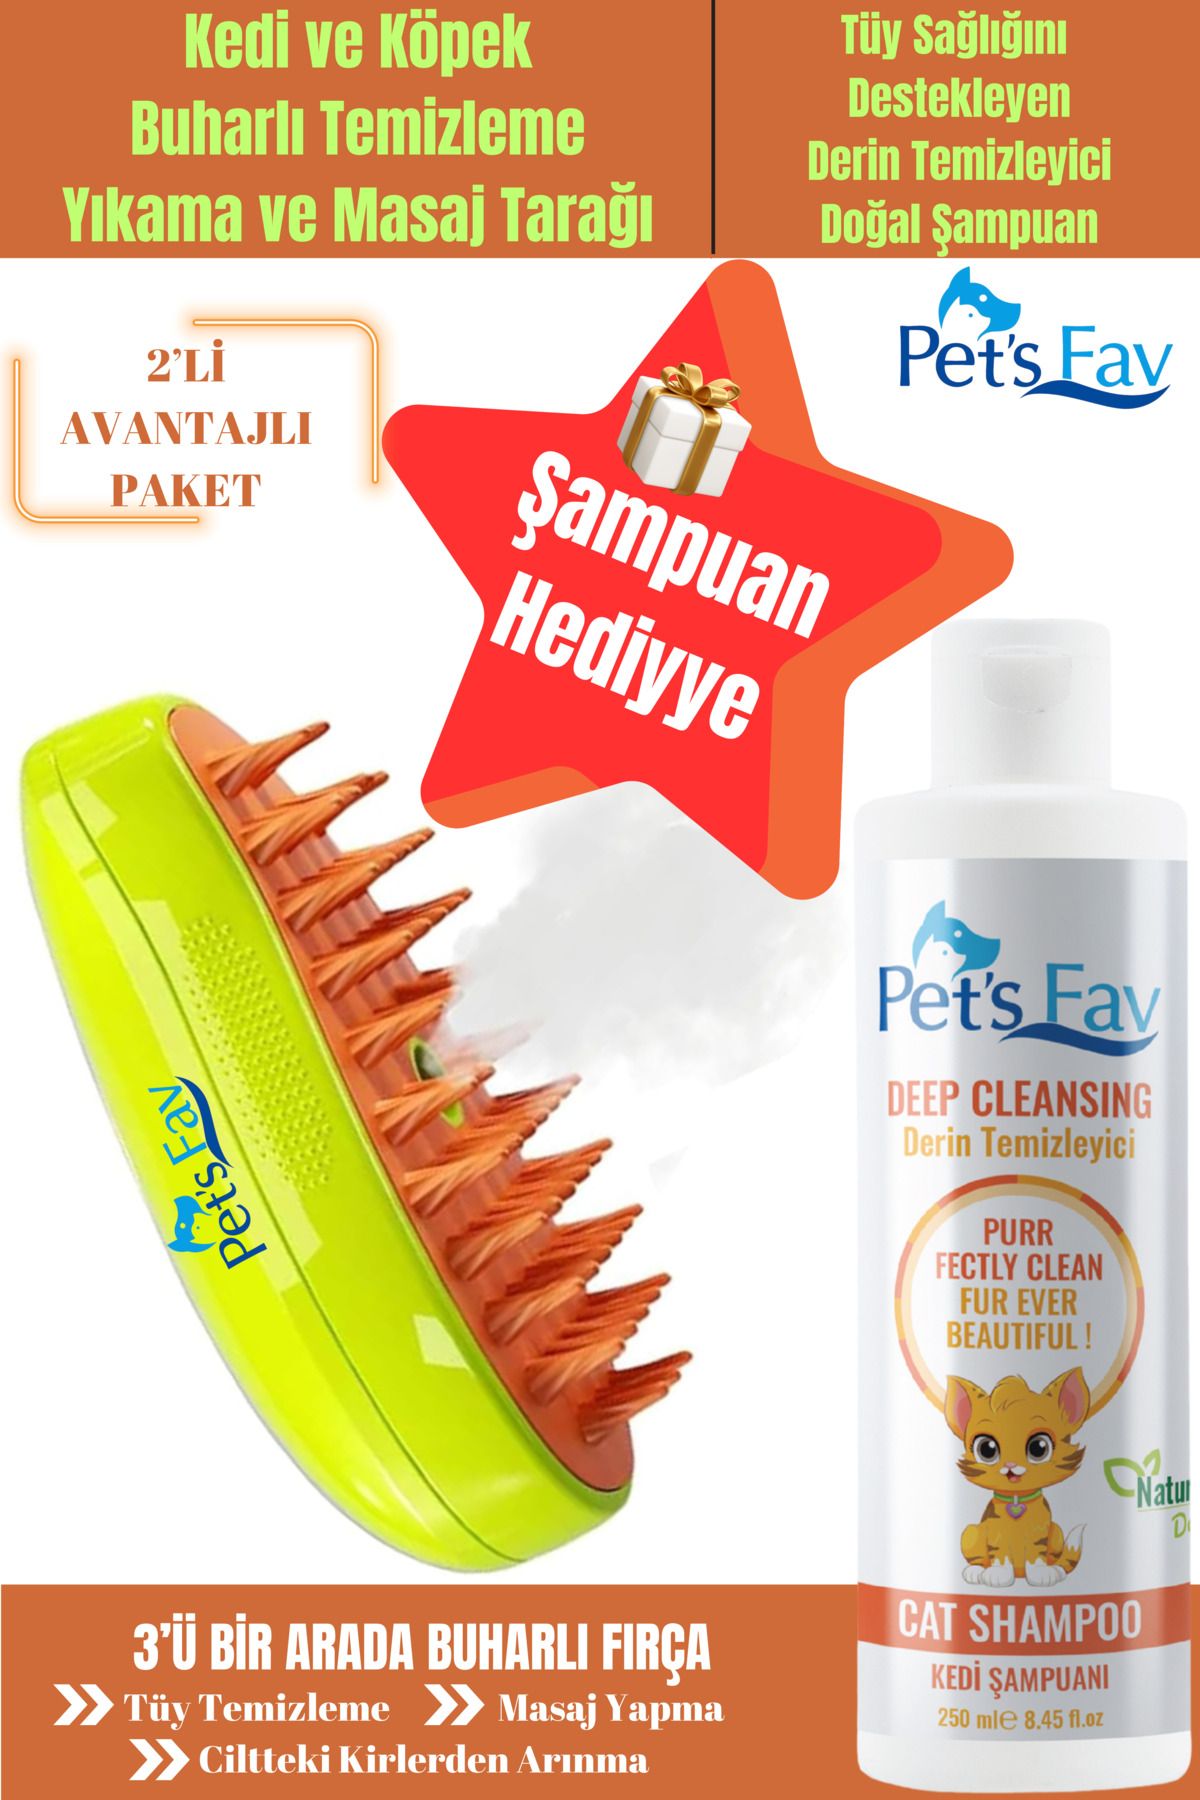 Pets Fav Buharlı Kedi ve Köpek Temizleme Yıkama Masaj Tarağı Fırçası ve Derin Temizleyici Kedi Şampuanı